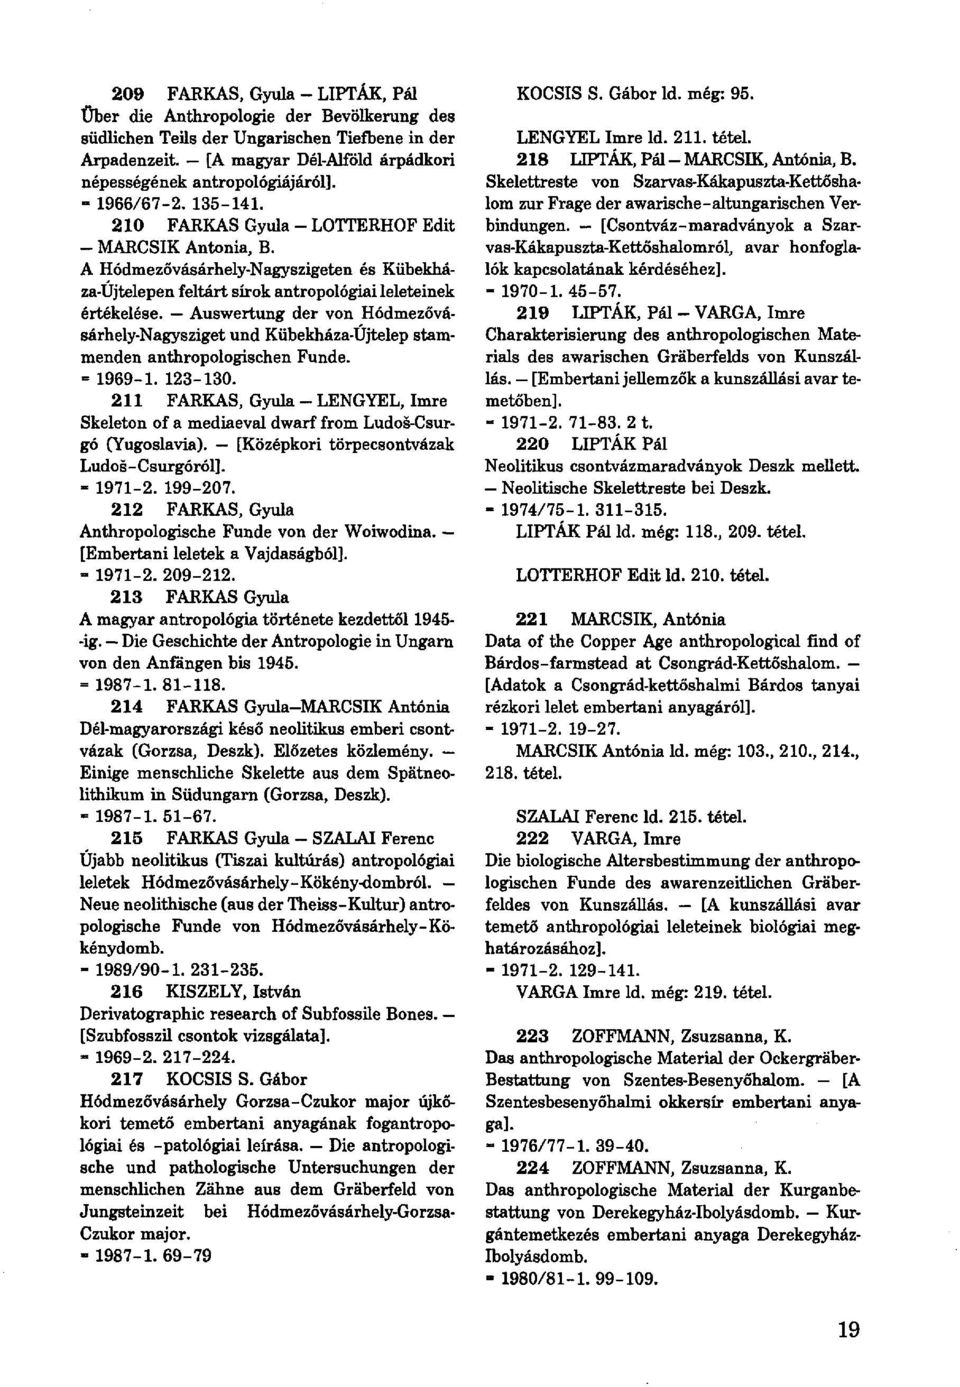 Auswertung der von Hódmezővásárhely-Nagysziget und Kübekháza-Újtelep stammenden anthropologischen Funde. = 1969-1. 123-130.